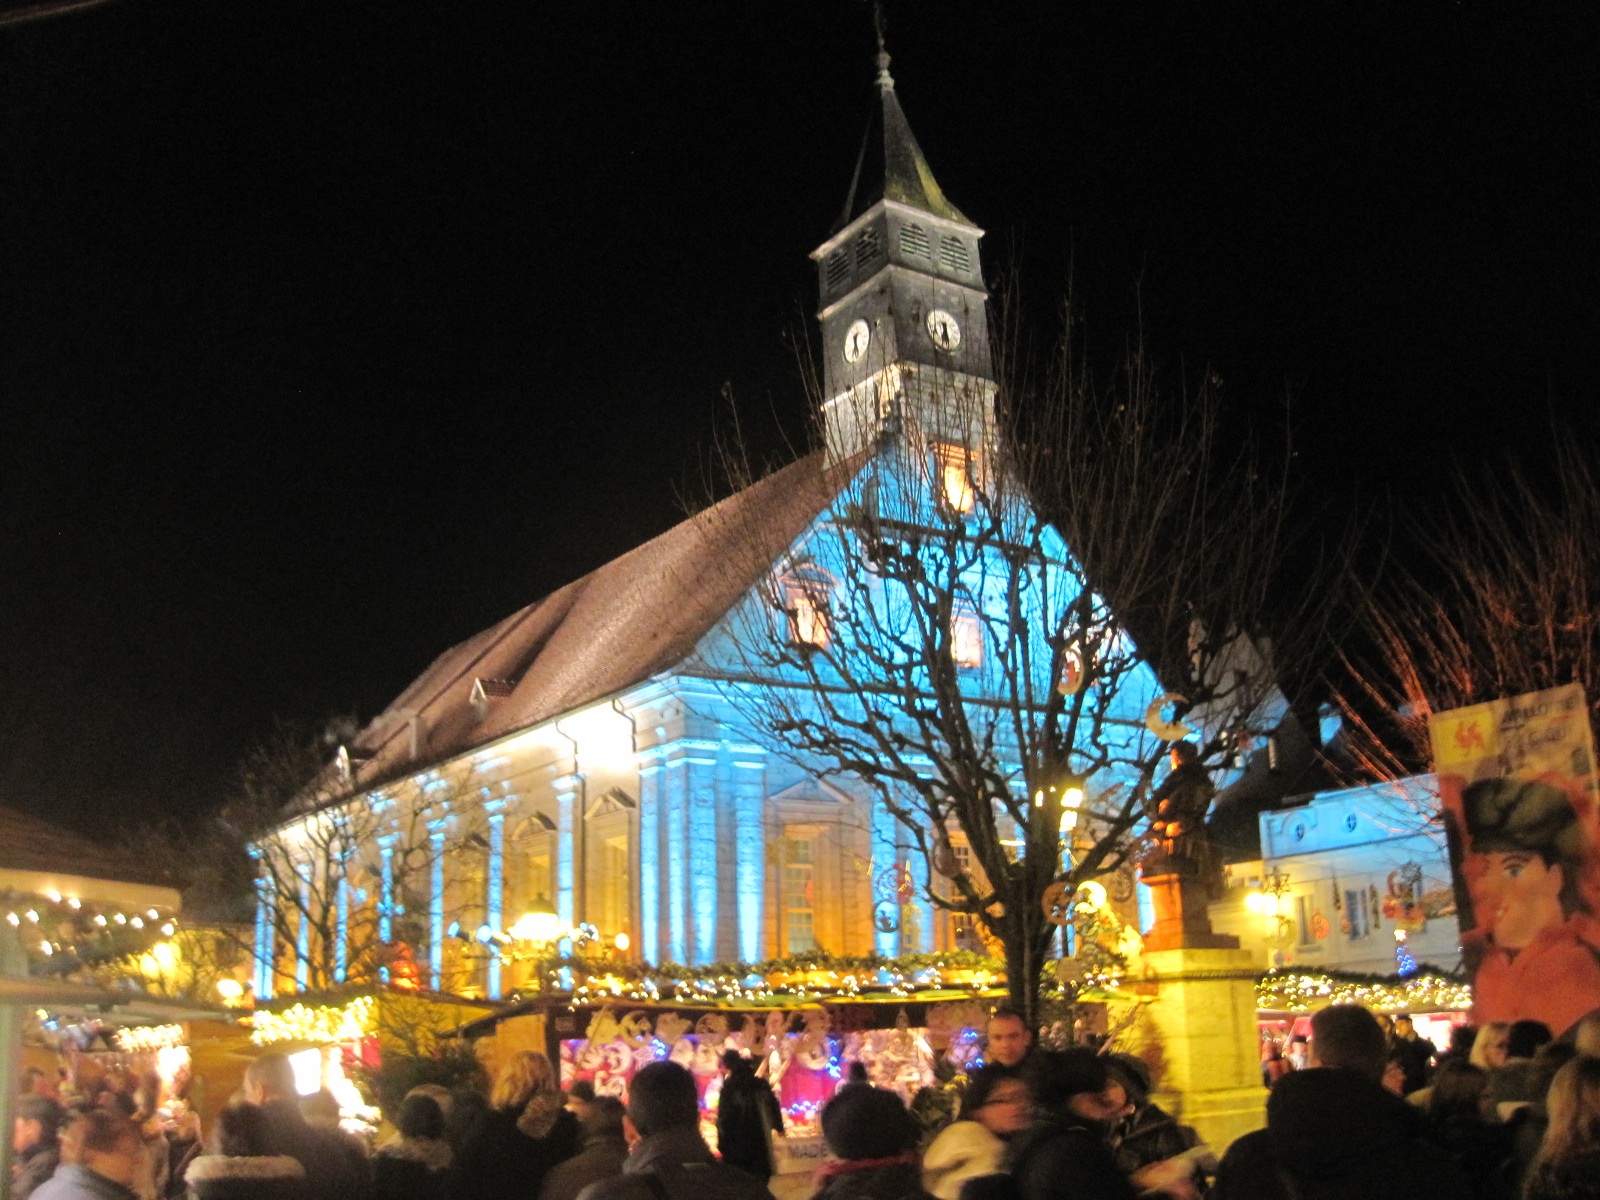 Les pays de Savoie seront invités d'honneur de cette année 2019 des Lumières de Noël de Montbéliard. (CC BY-SA 3.0)